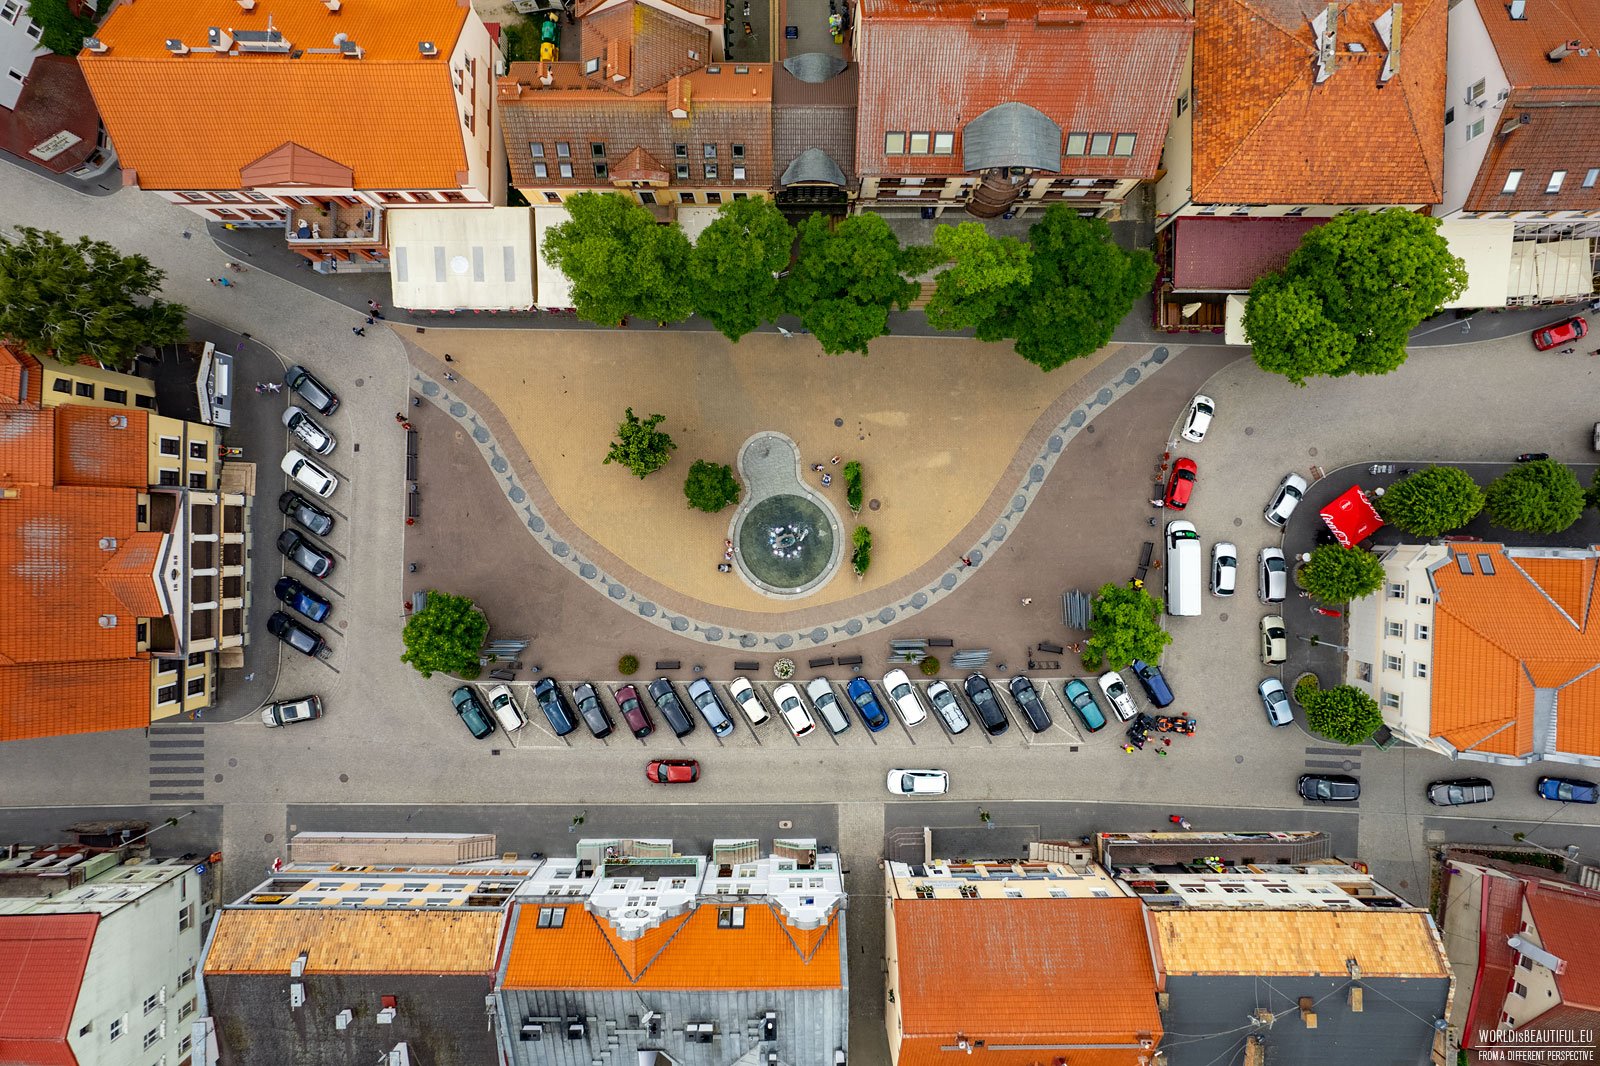 The market square in Mikołajki